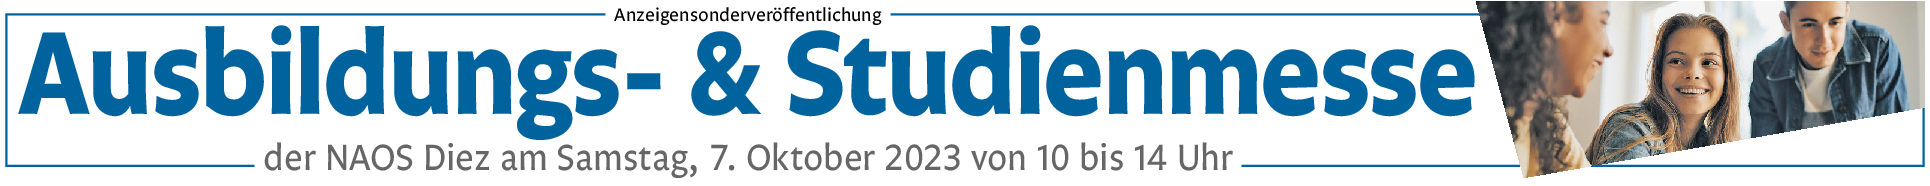 Ausbildungs- und Studienmesse an der Berufsbildenden Schule in Diez